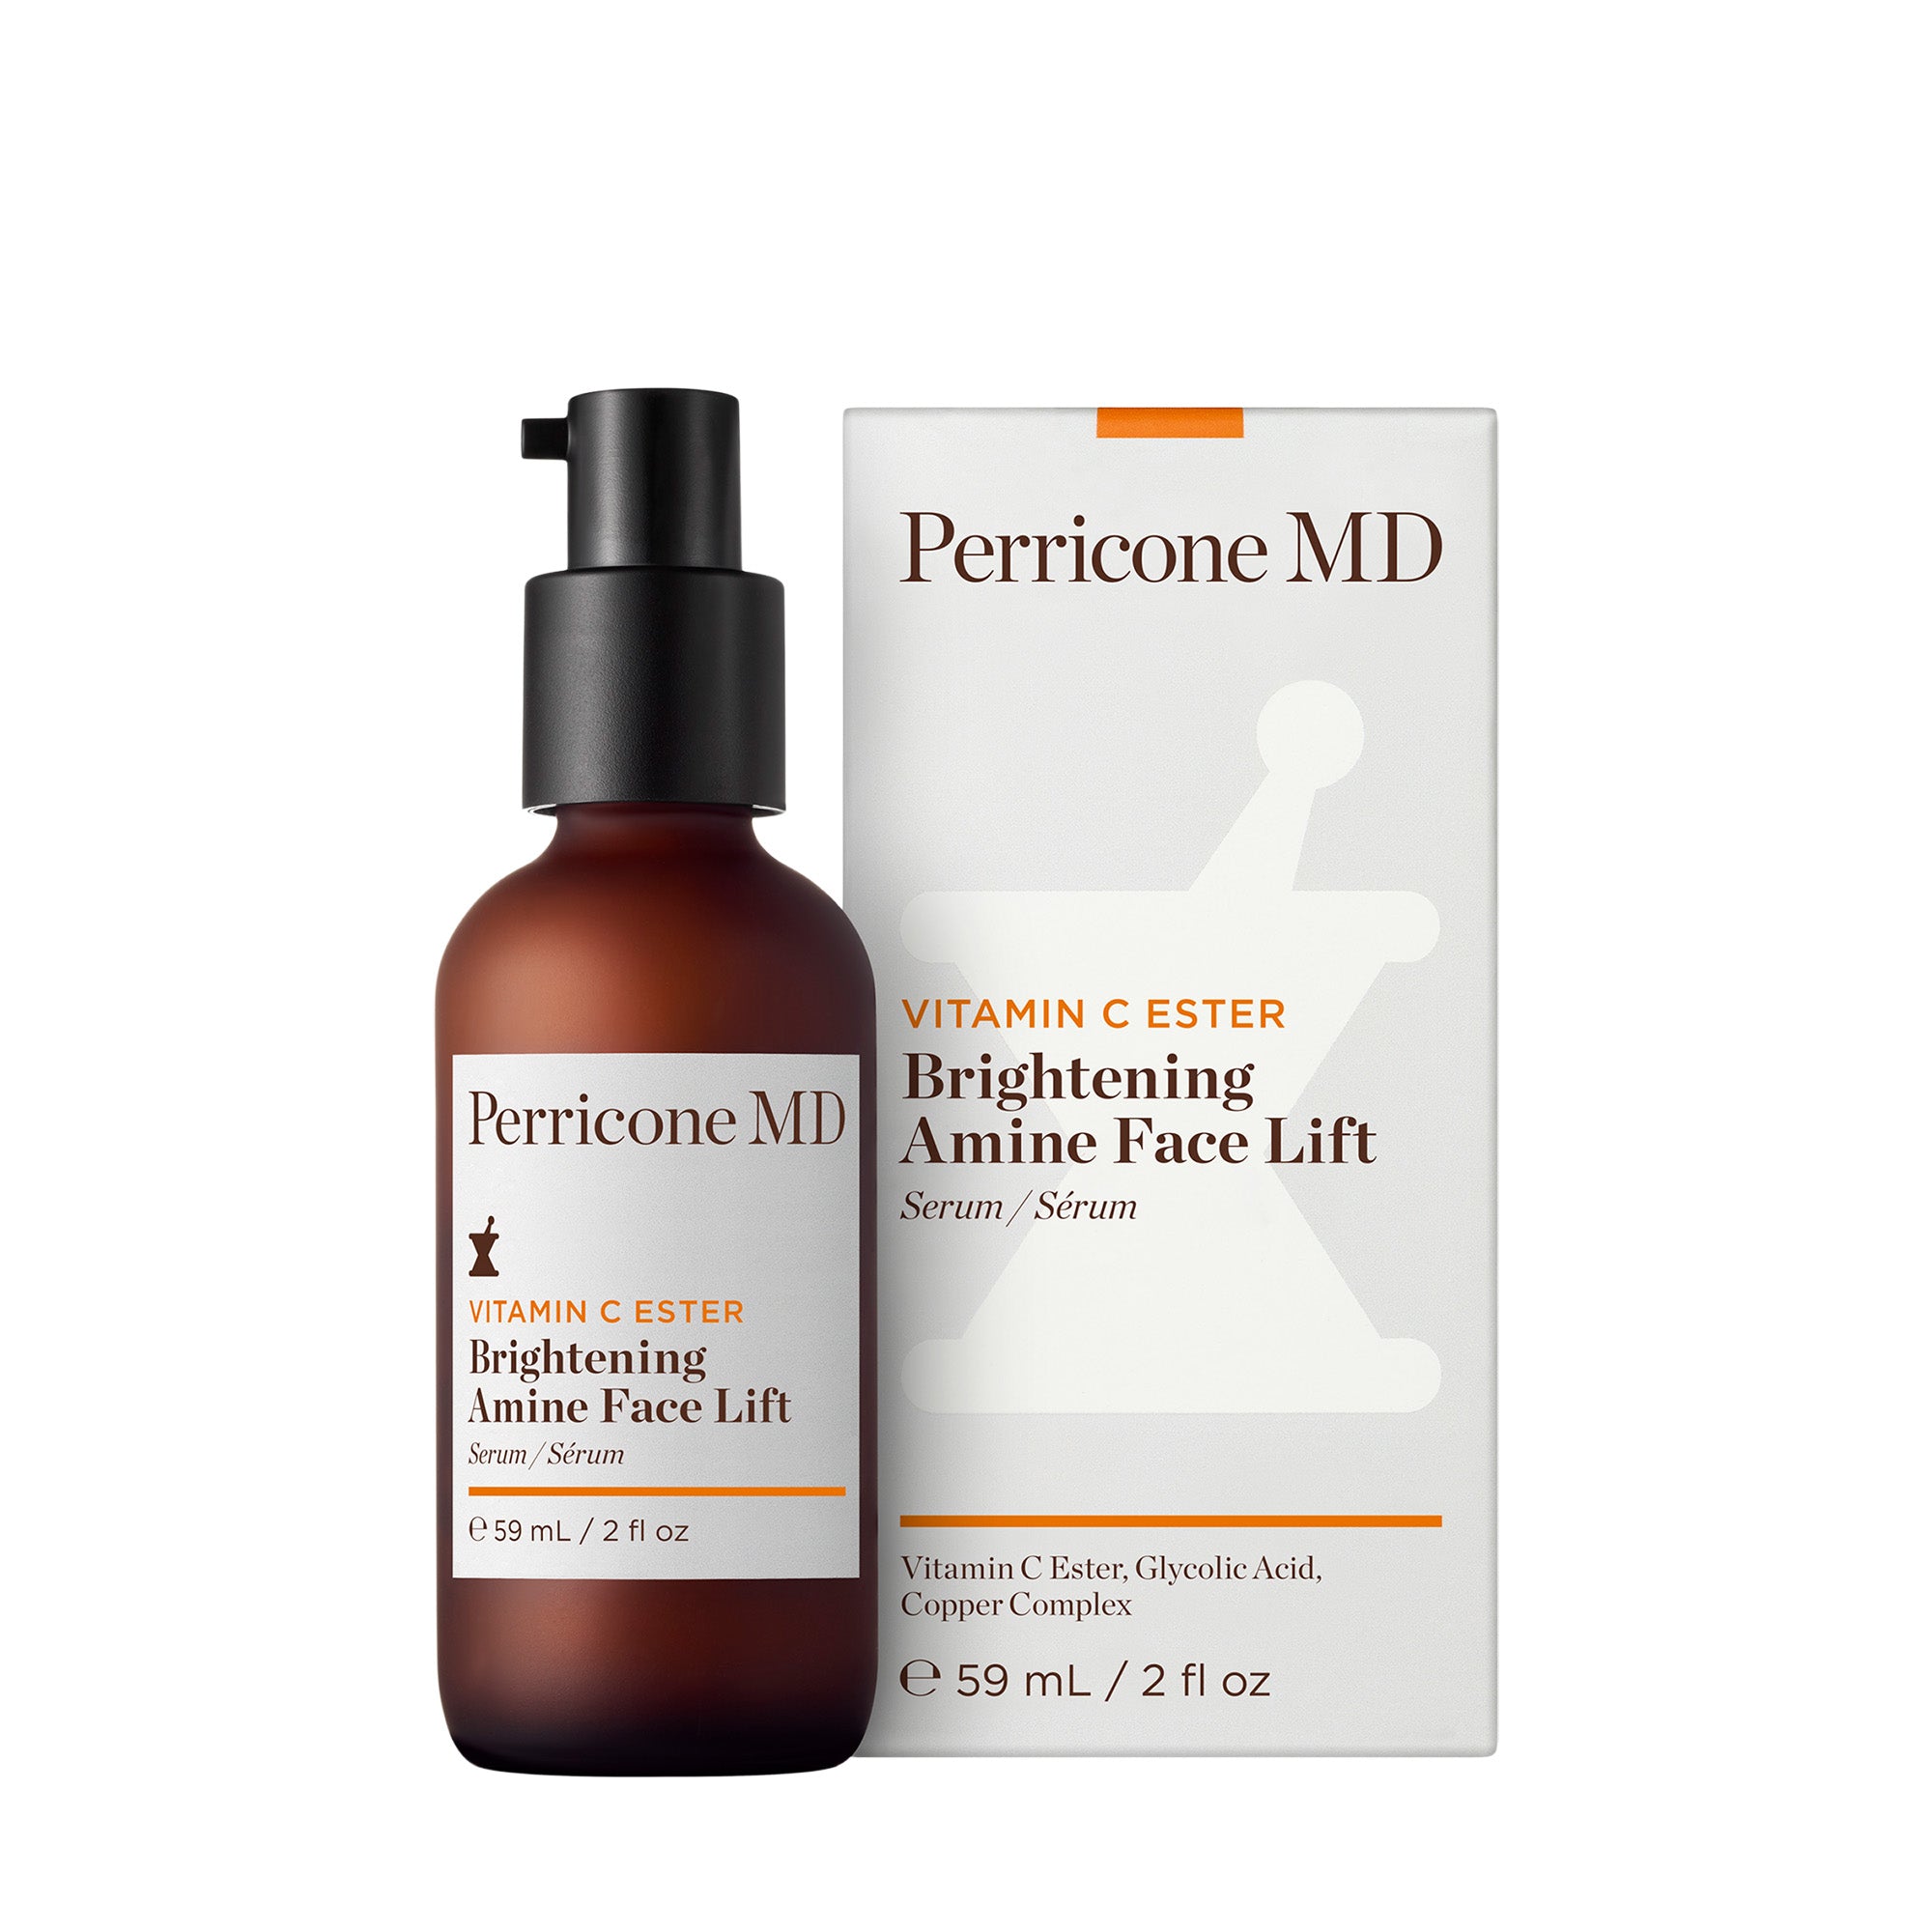 Perricone MD Vitamin C Ester Brightening Amine Face Lift / 2OZ